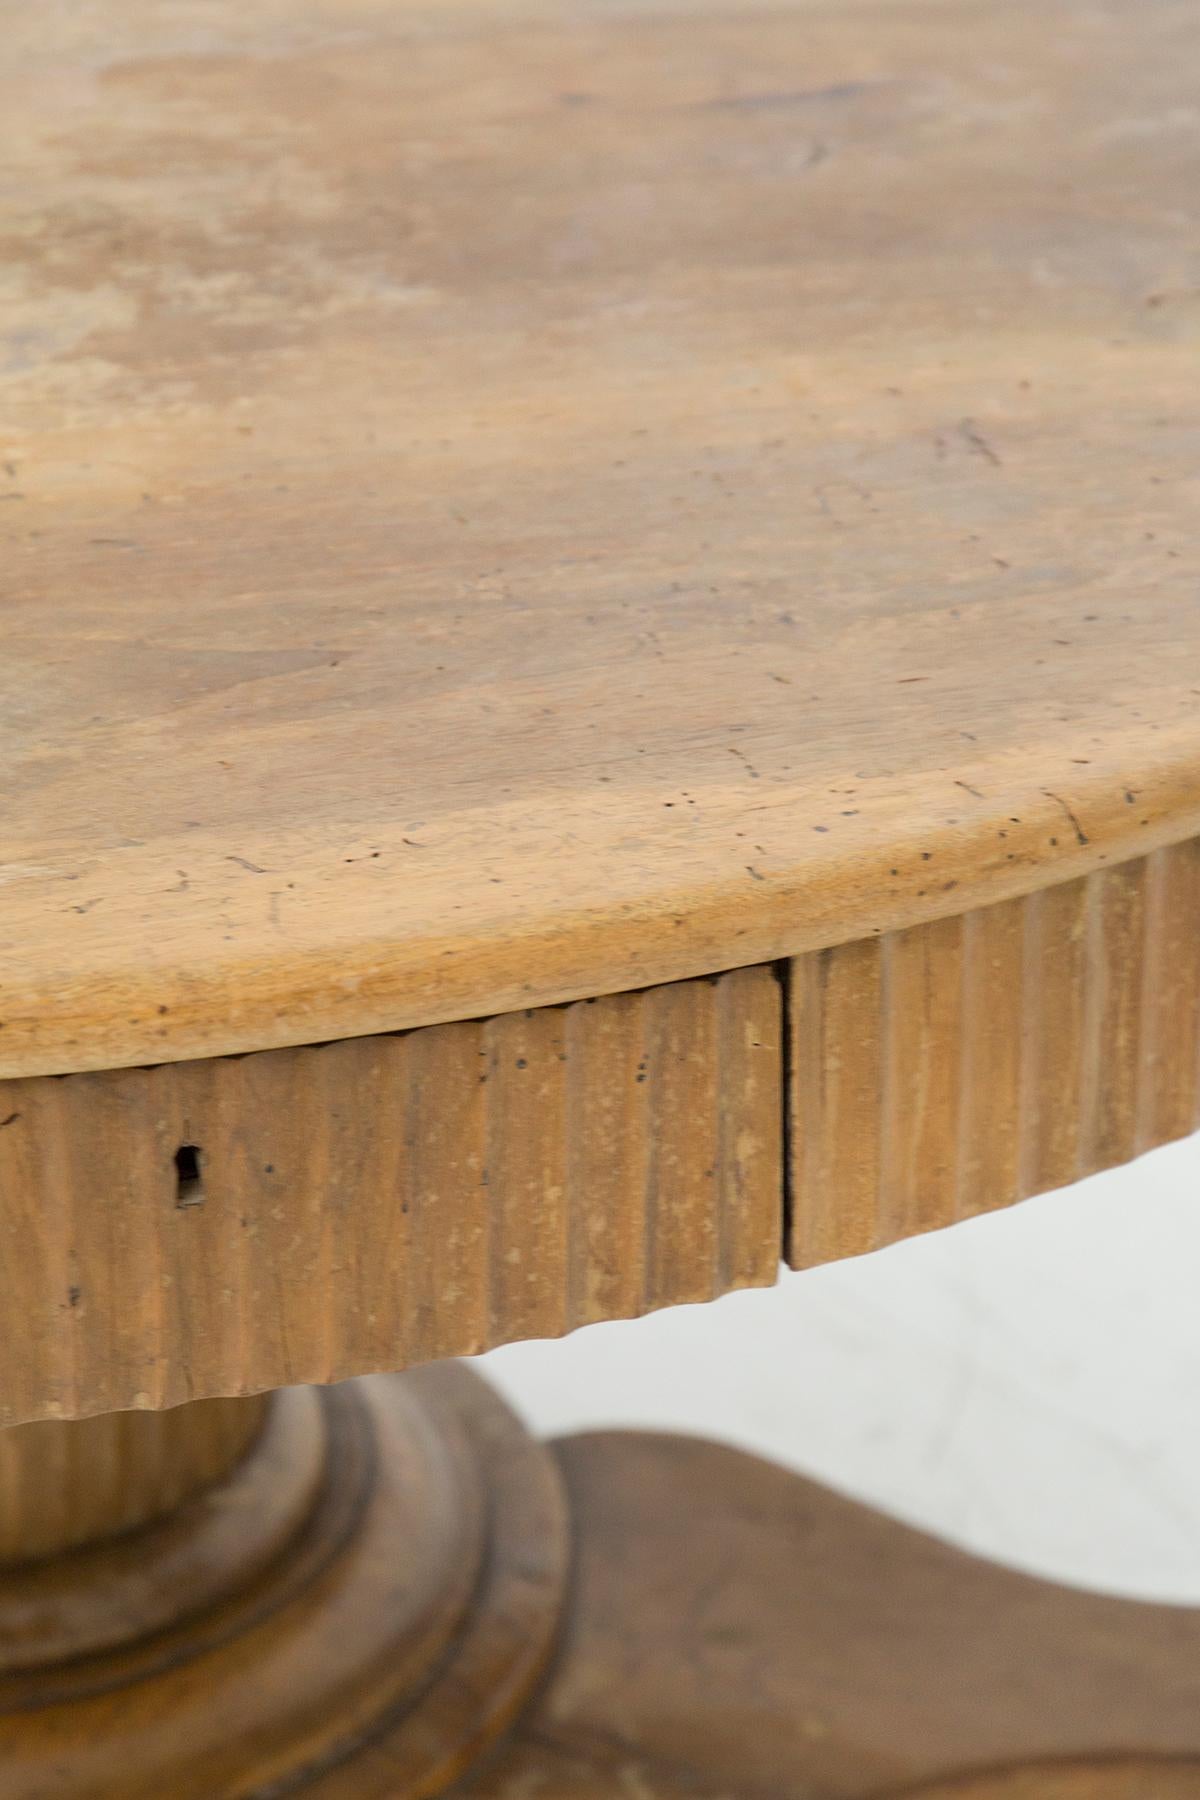 Schöner runder antiker Tisch aus Nussbaumholz, 18. Jahrhundert, italienische Herstellung.
Der Tisch hat ein sehr komplexes Untergestell, das aus drei großen Füßen besteht, die mit einem einzigen zentralen Stiel verbunden sind.
Die Füße sind drei